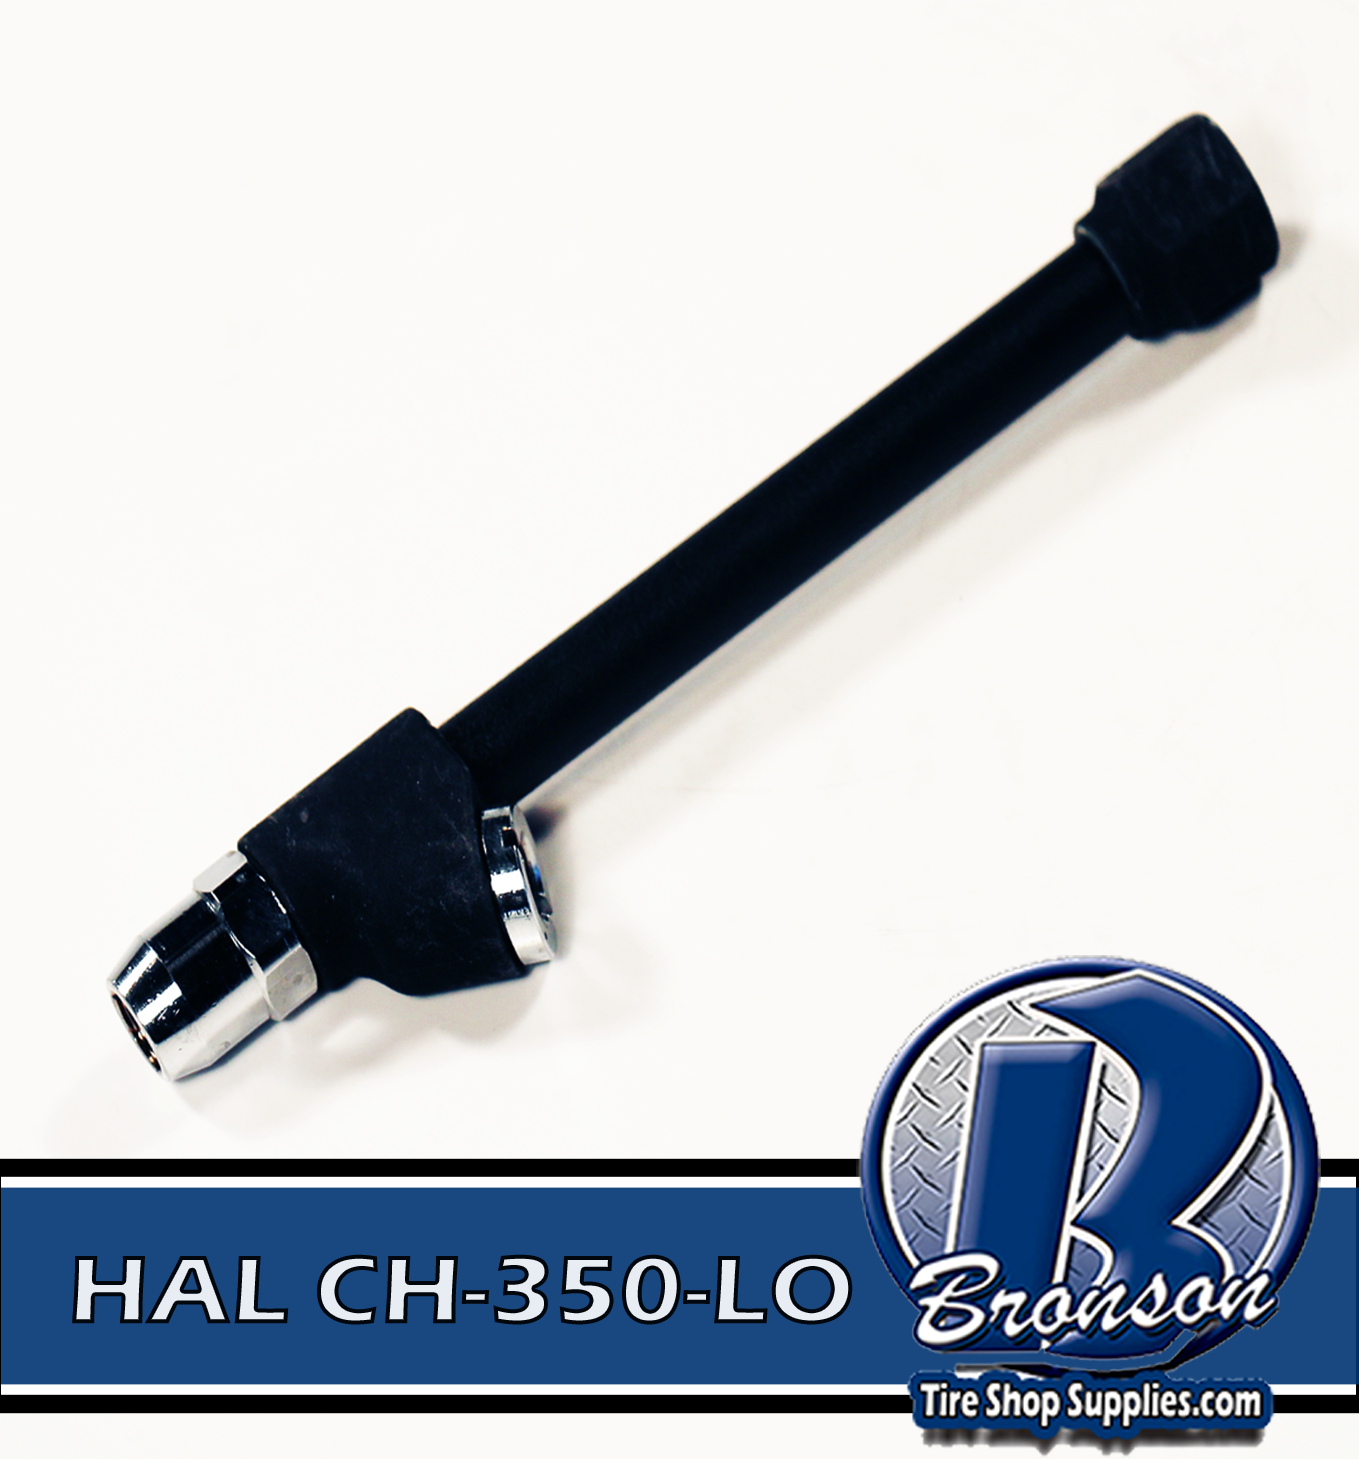 Haltec CH-350-LO